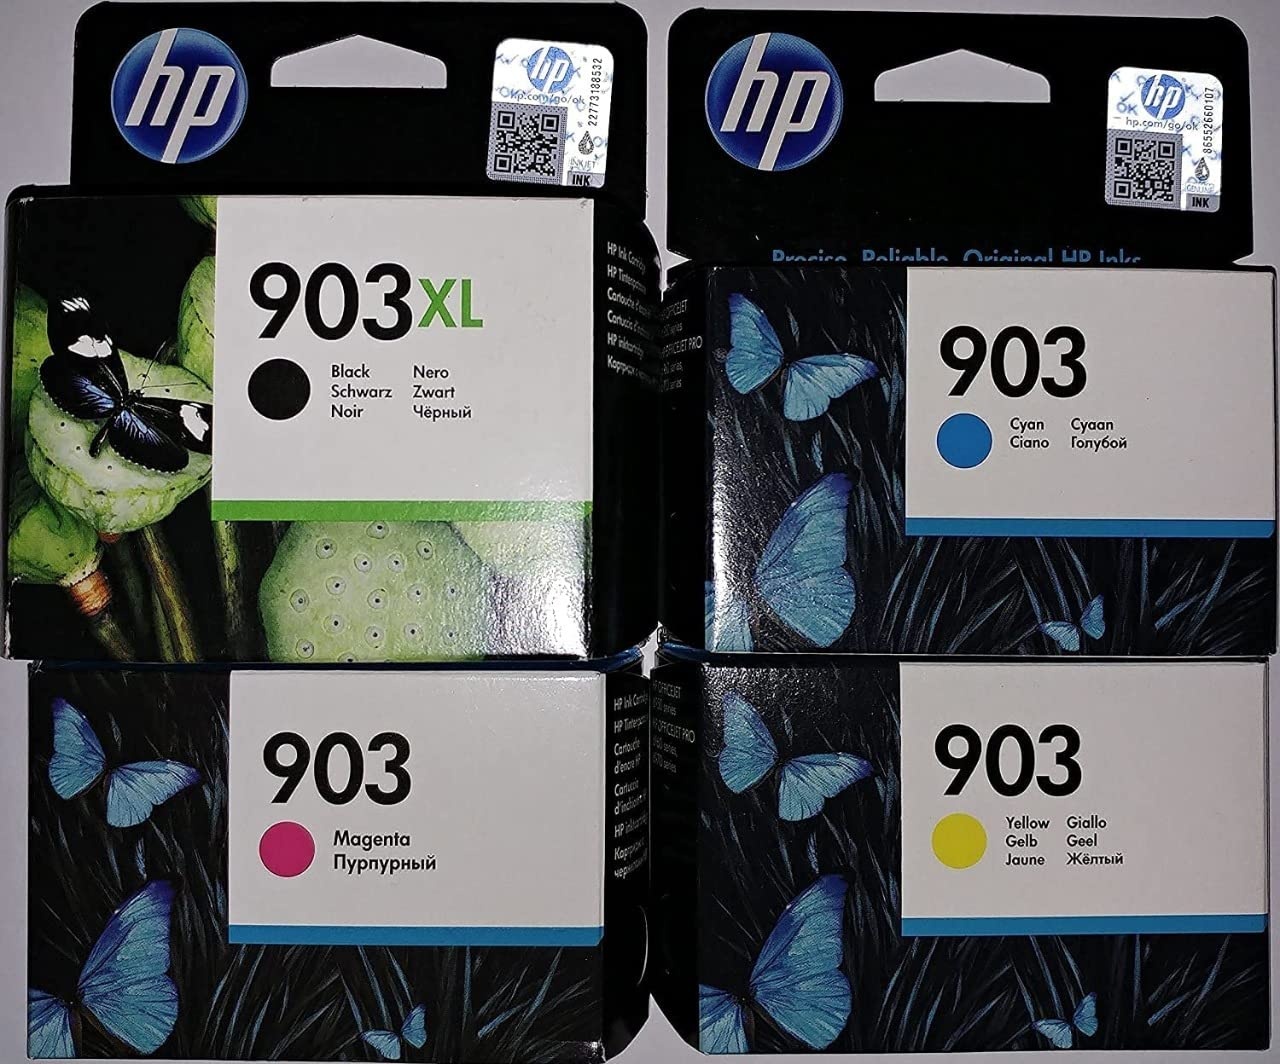 HP 903XL Schwarz und HP 903 je 1x Cyan/ Magenta/ Gelb Original Druckerpatronen für HP Officejet 6950, HP Officejet Pro 6960, HP Officejet Pro 6970